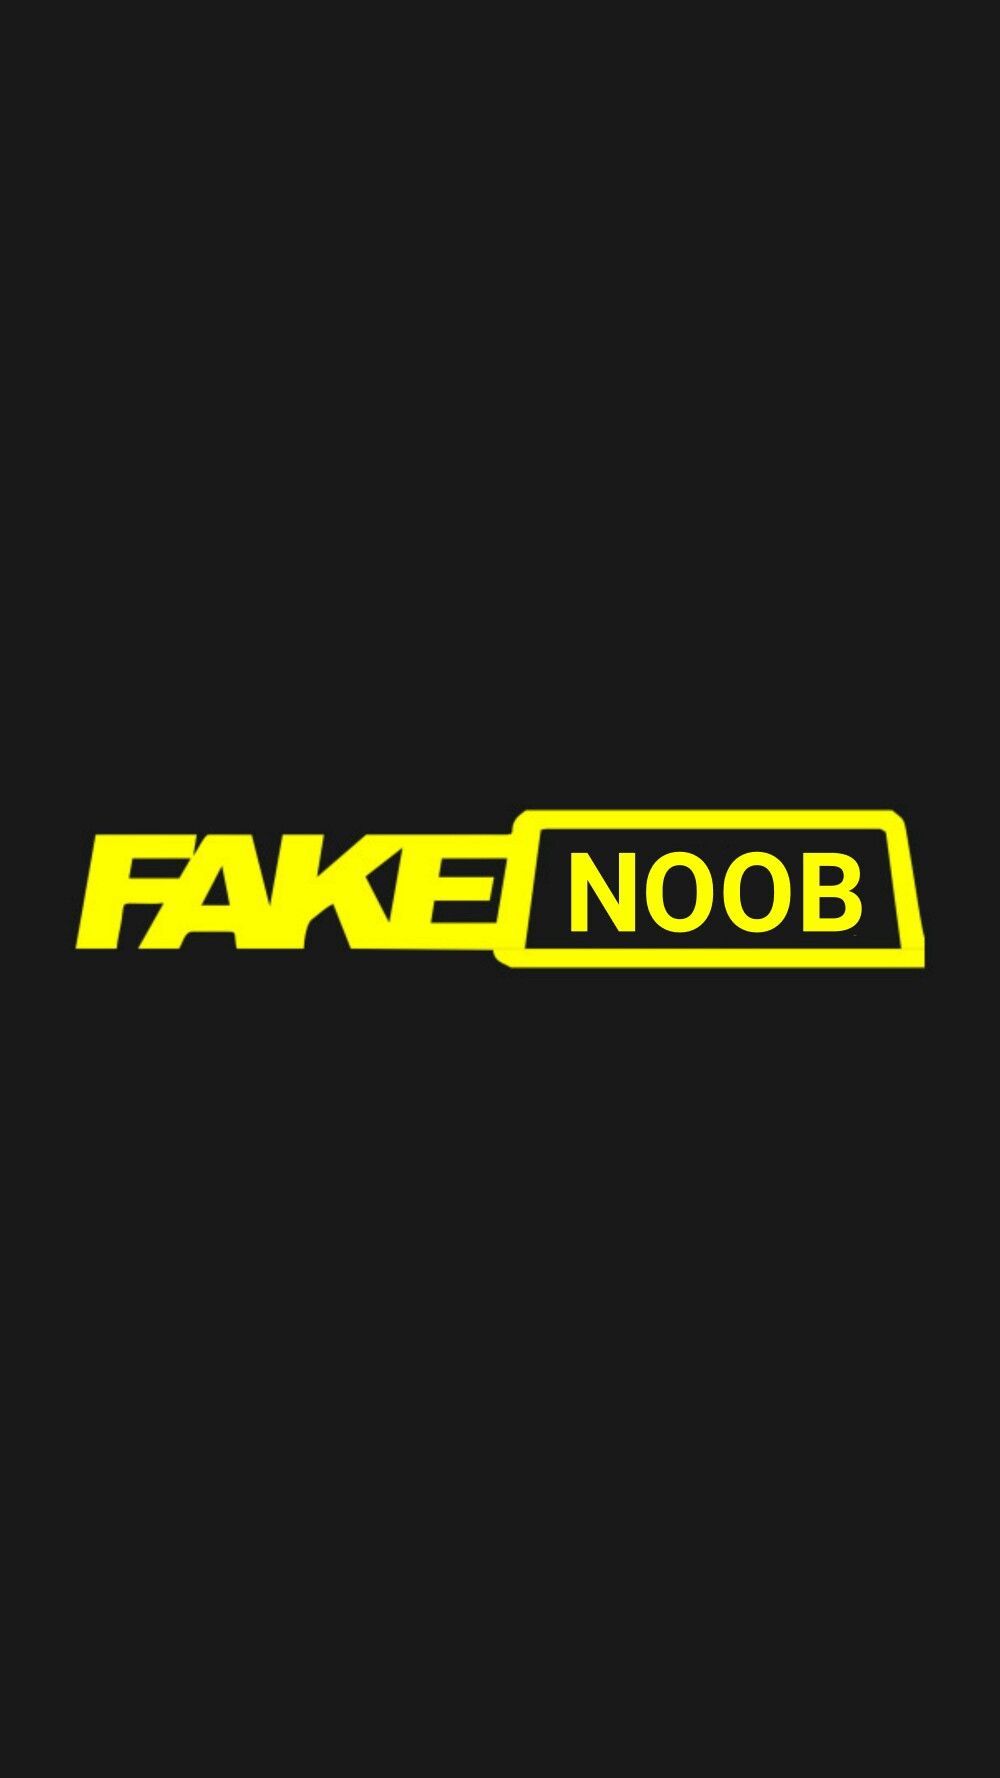 A fake noob logo in fake taxi style di 2020 (Dengan gambar)